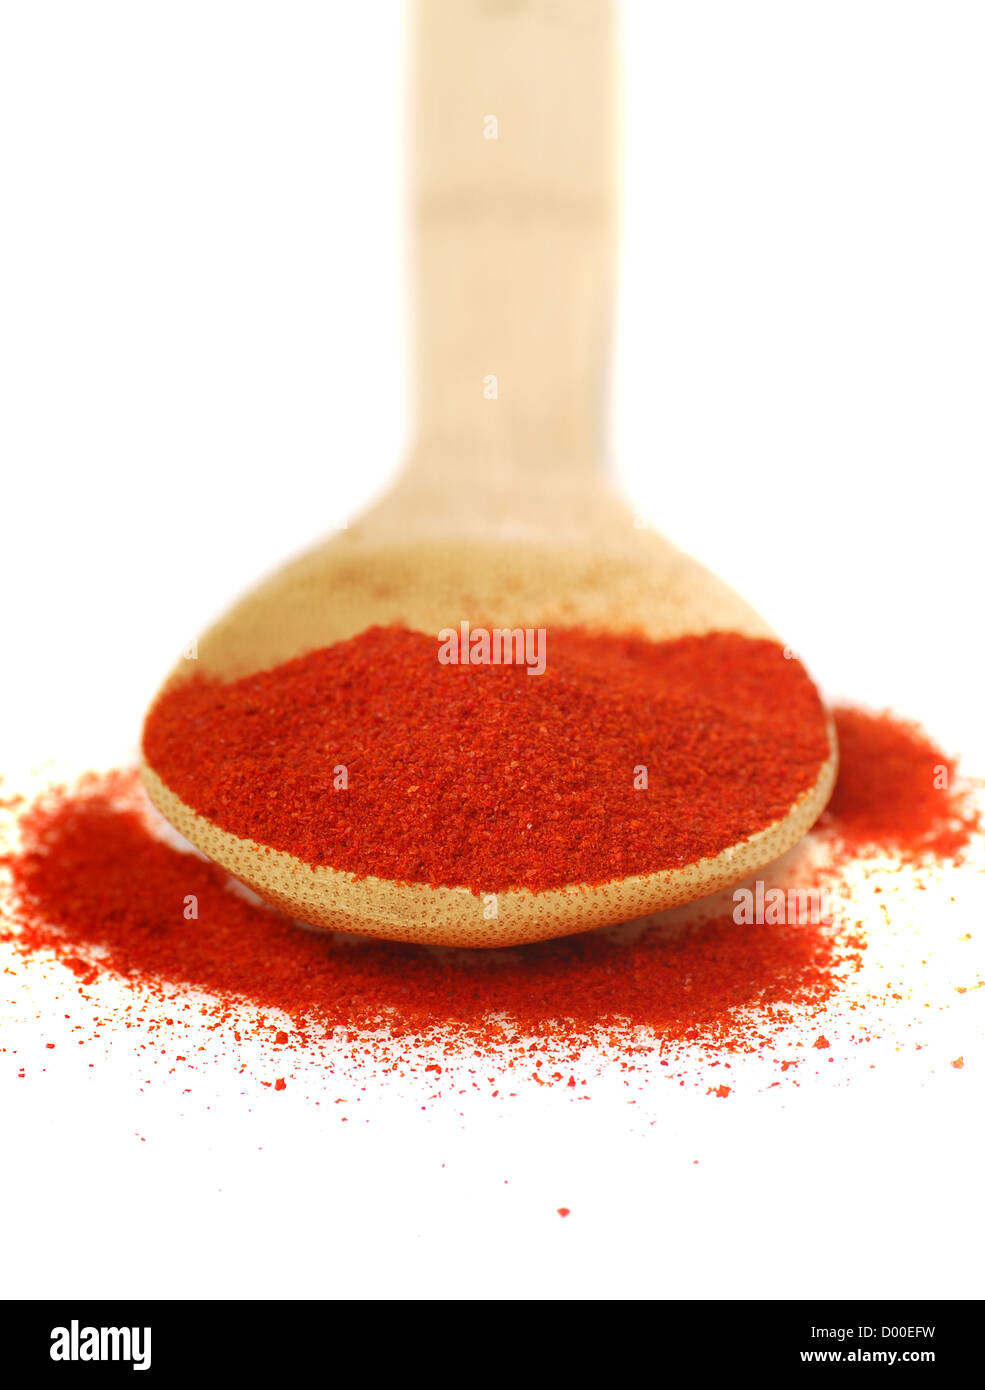 Macinato finemente affumicato paprika ungherese su un cucchiaio Foto Stock